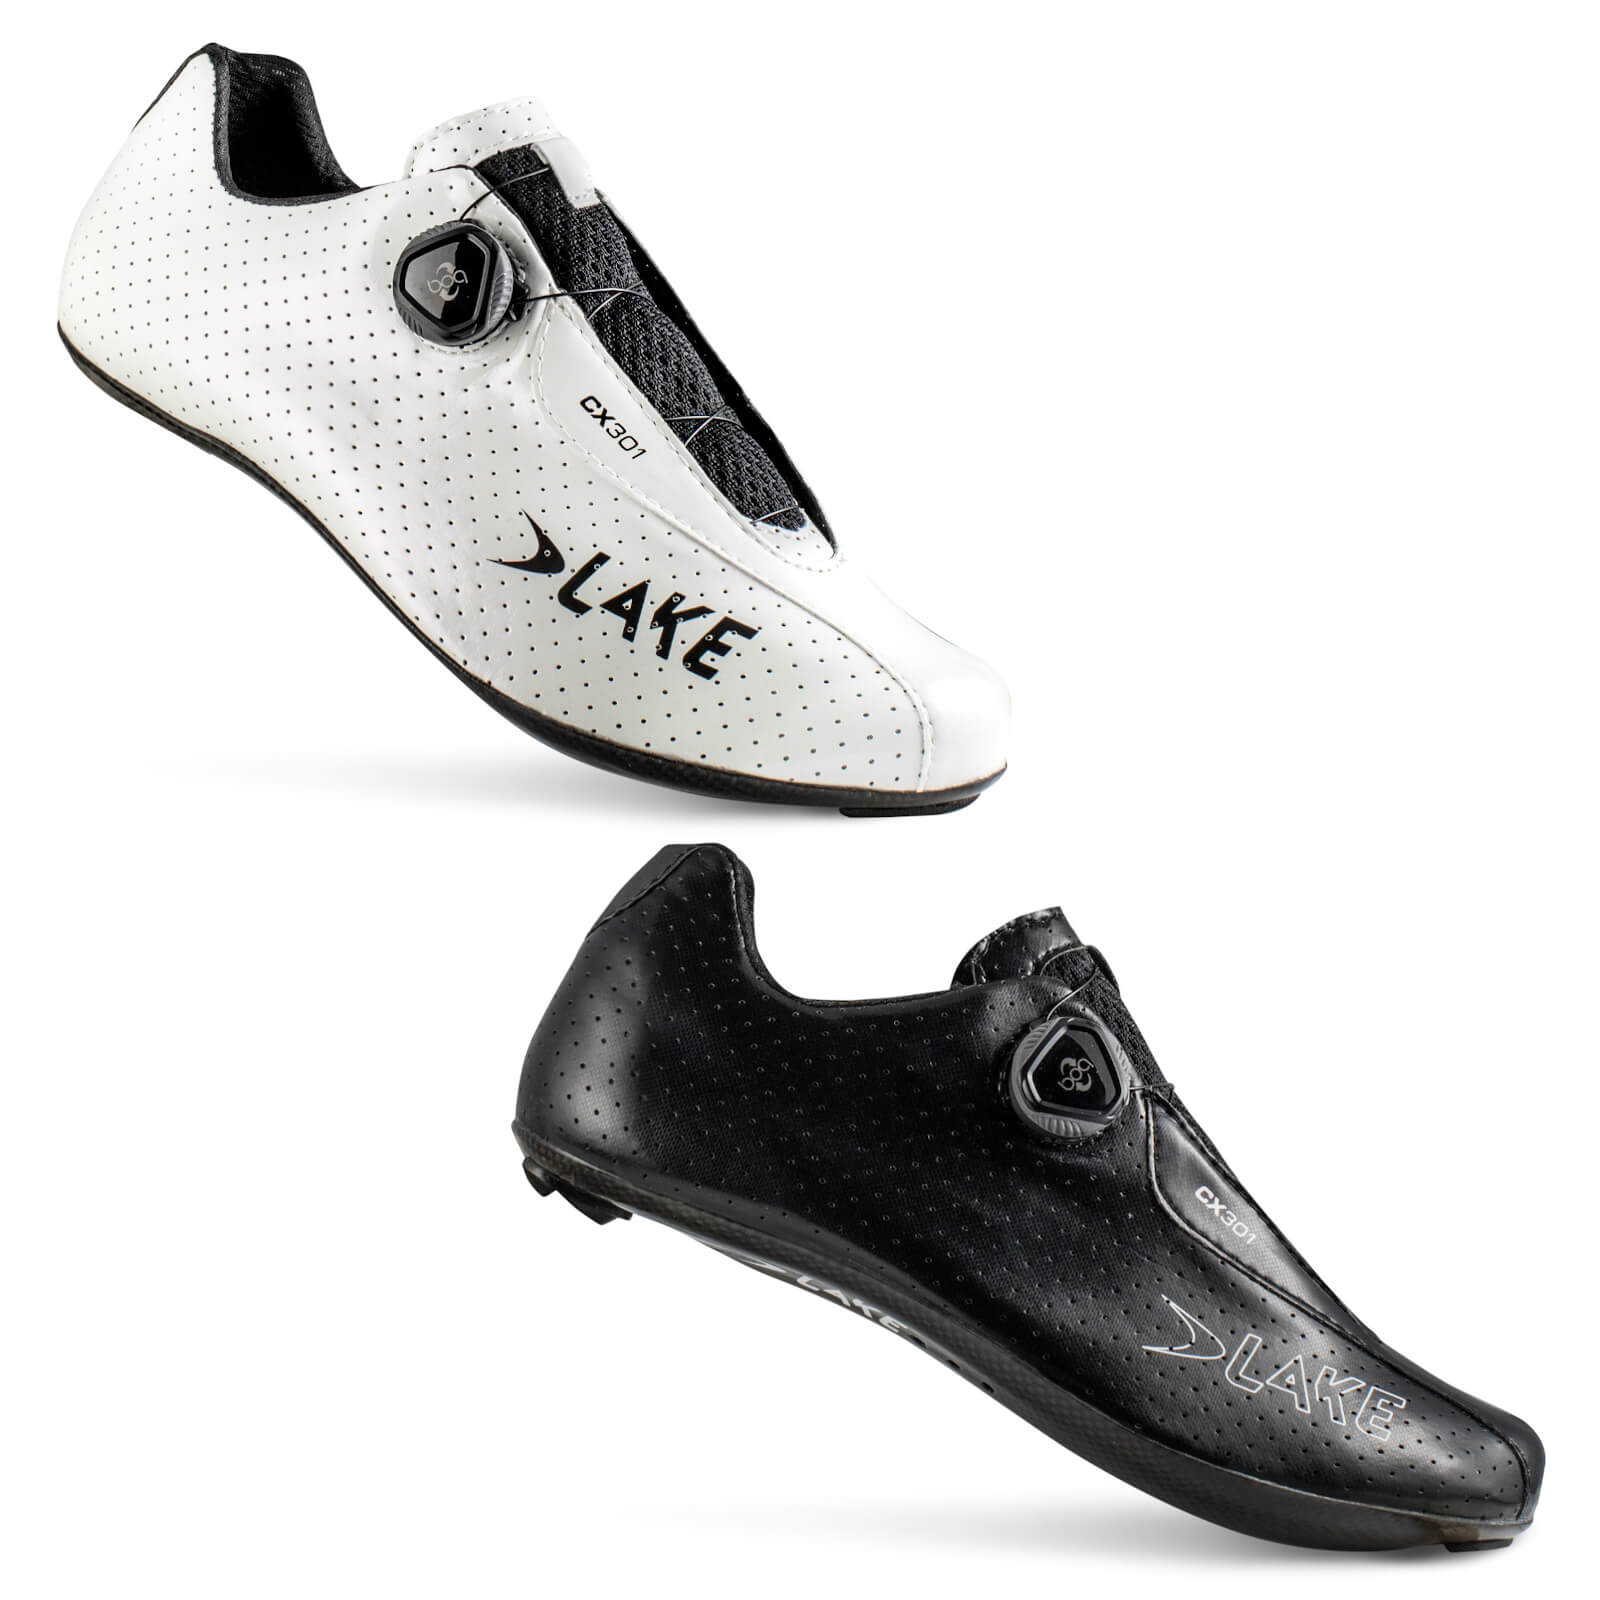 Lake CX301 Road Shoes - EU 42 - White